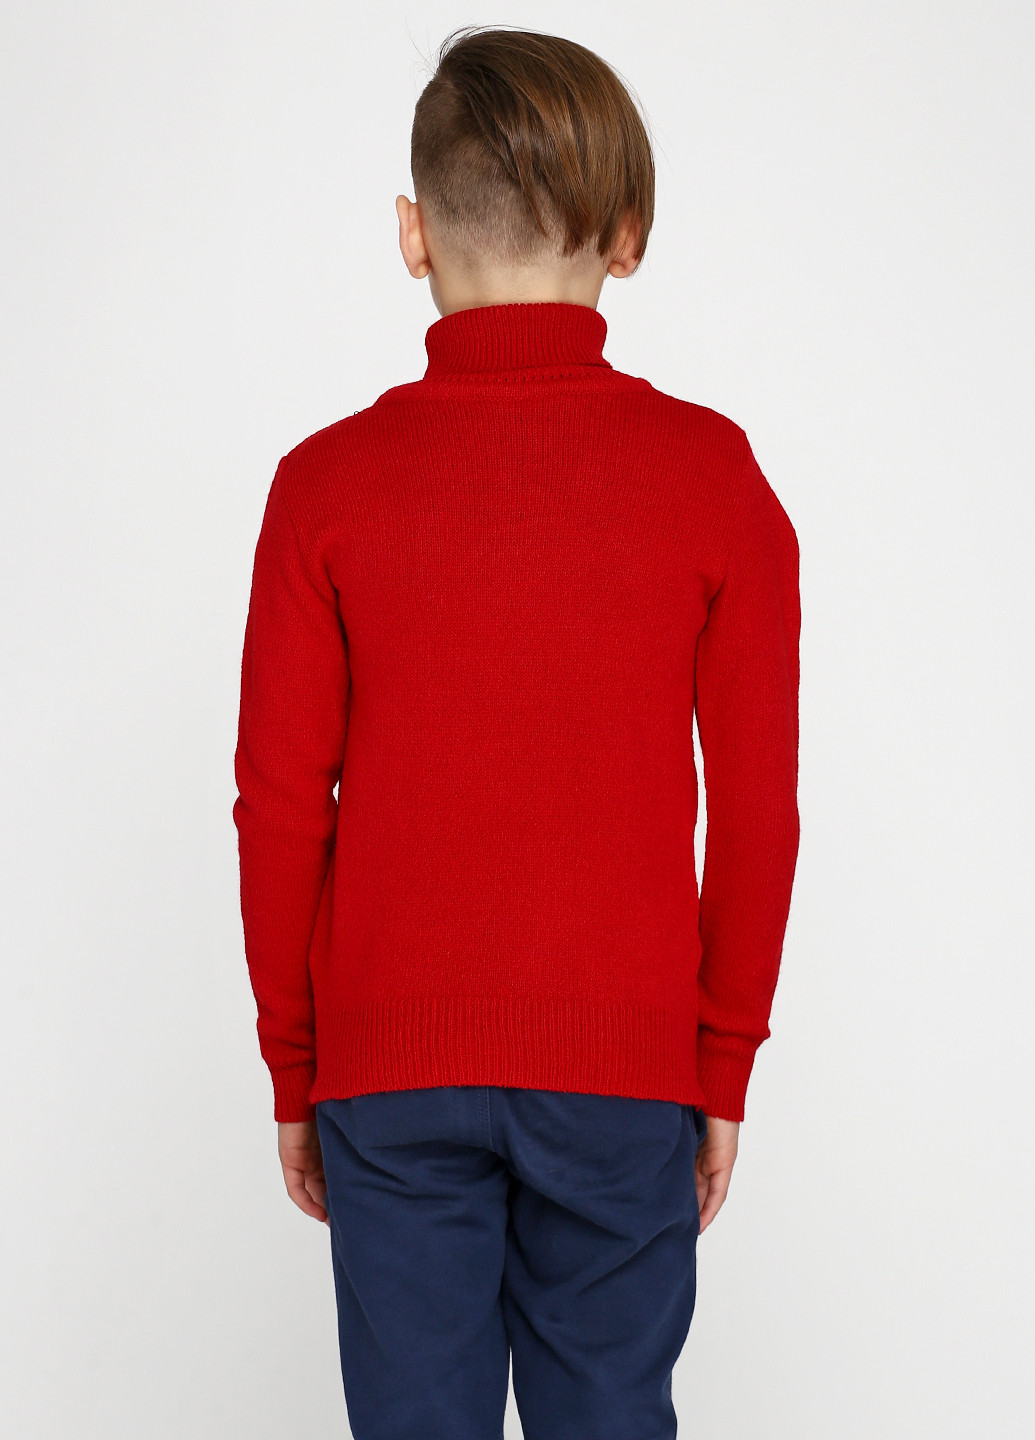 Красный демисезонный свитер хомут Top Hat Kids